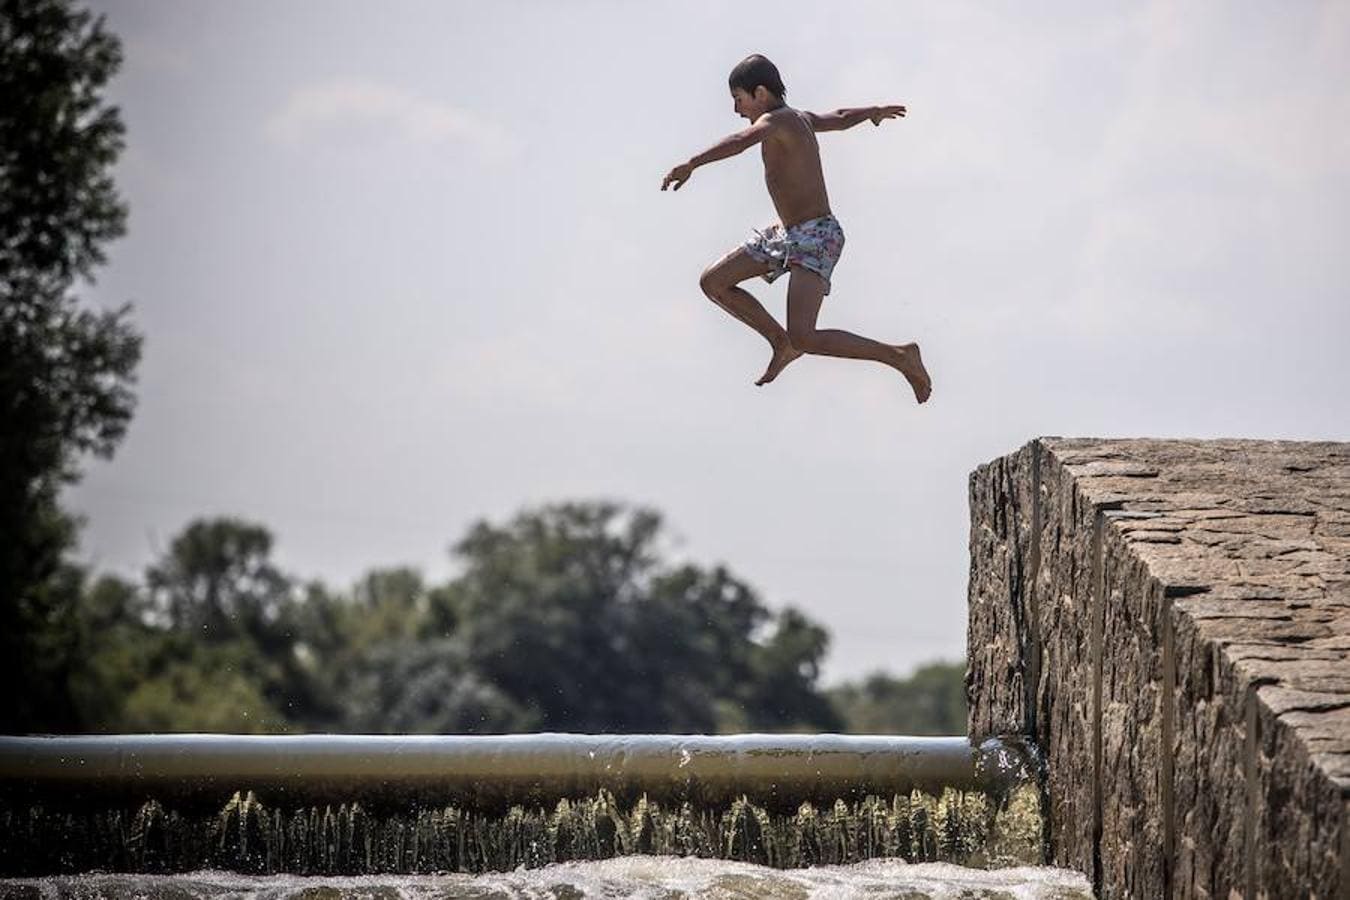 República Checa también sufre el calor. Un niño se refresca para combatir el calor en el río Berounka, cerca de la localidad de Dobrichovice, República Checa. Las temperaturas están alcanzando hasta 35 grados.